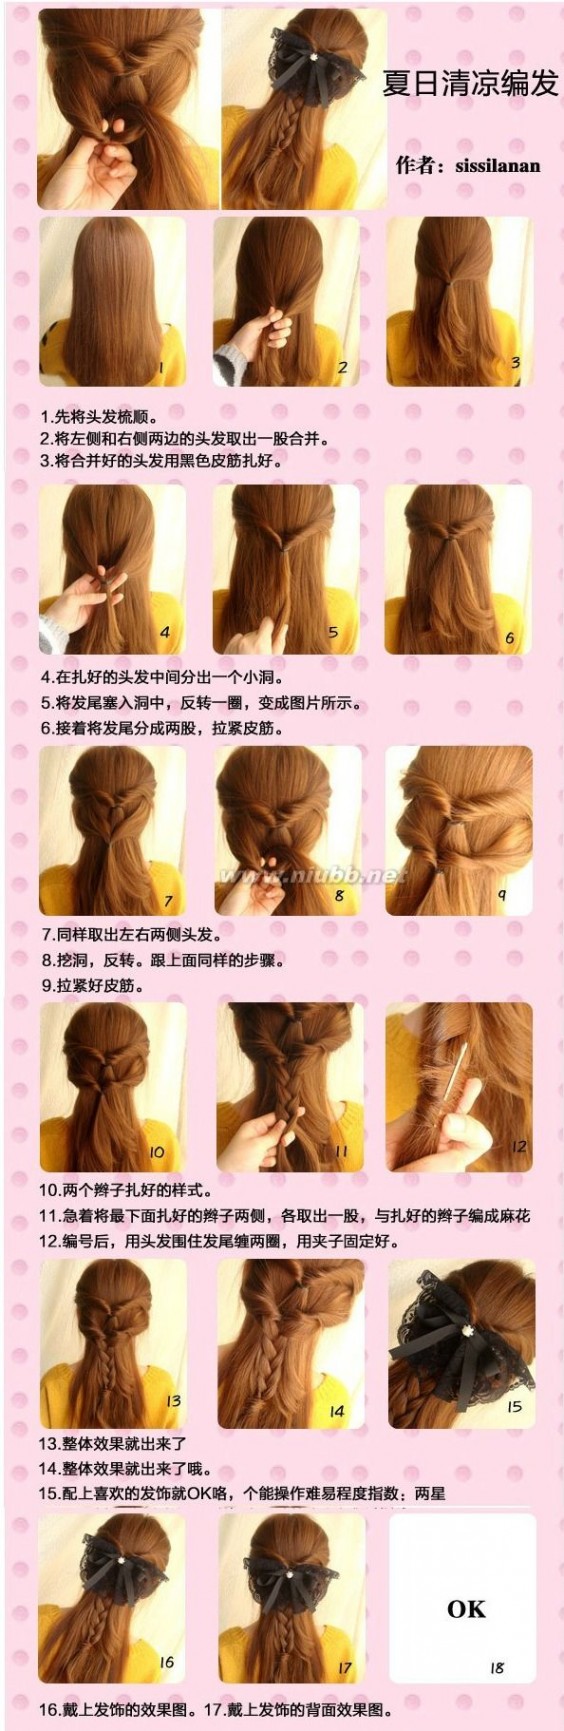 三十种简单好看的扎头发方法图解_怎样梳好看的发型